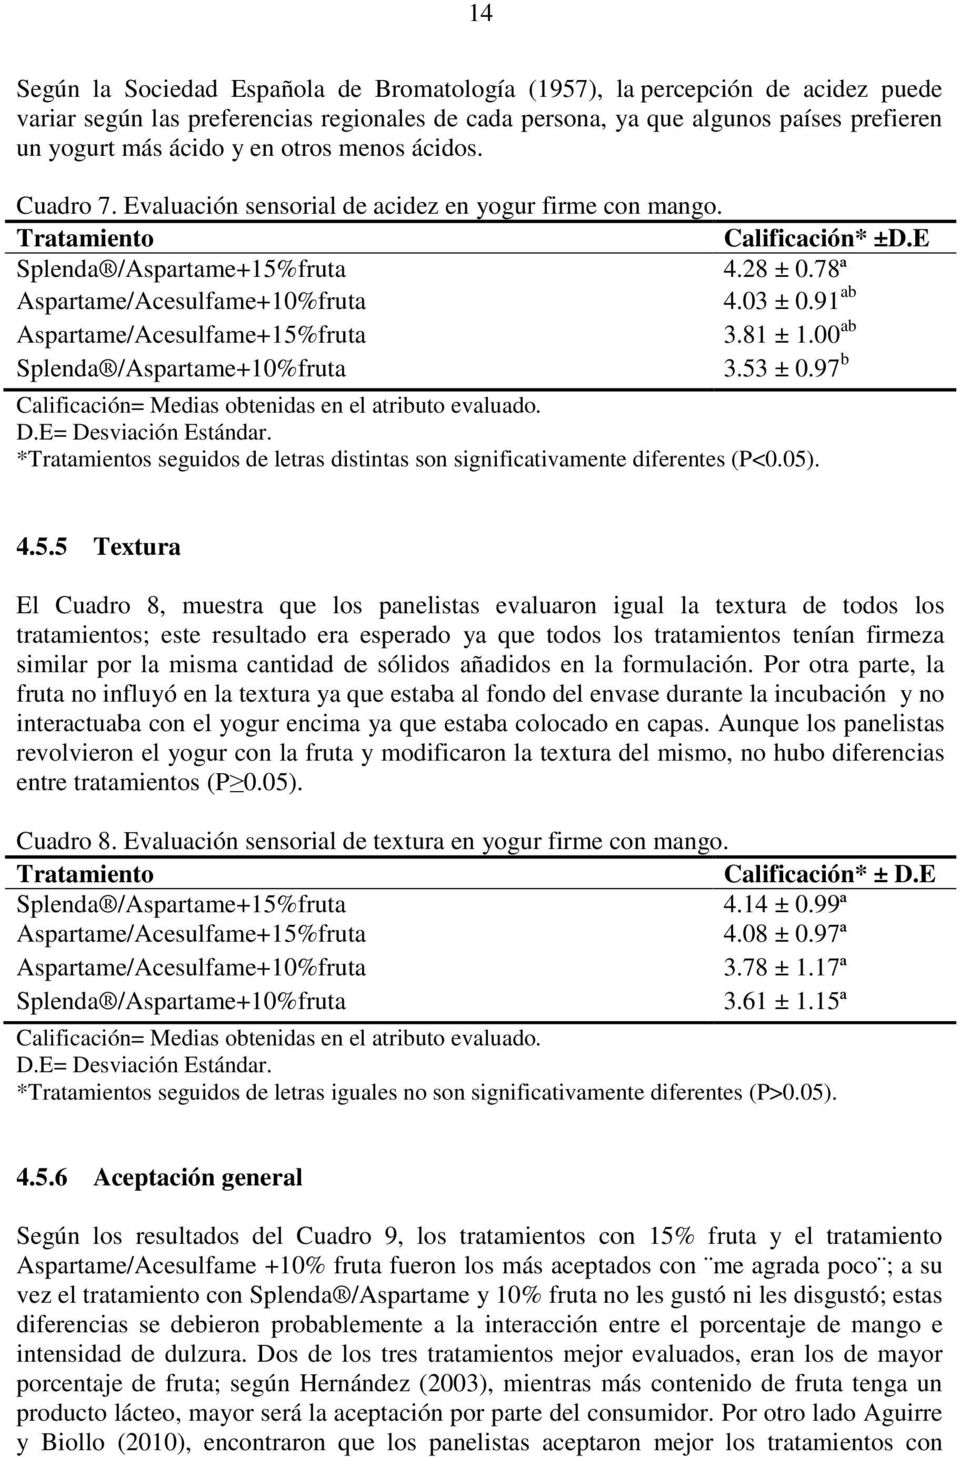 91 ab Aspartame/Acesulfame+15%fruta 3.81 ± 1.00 ab Splenda /Aspartame+10%fruta 3.53 ± 0.97 b Calificación= Medias obtenidas en el atributo evaluado. D.E= Desviación Estándar.